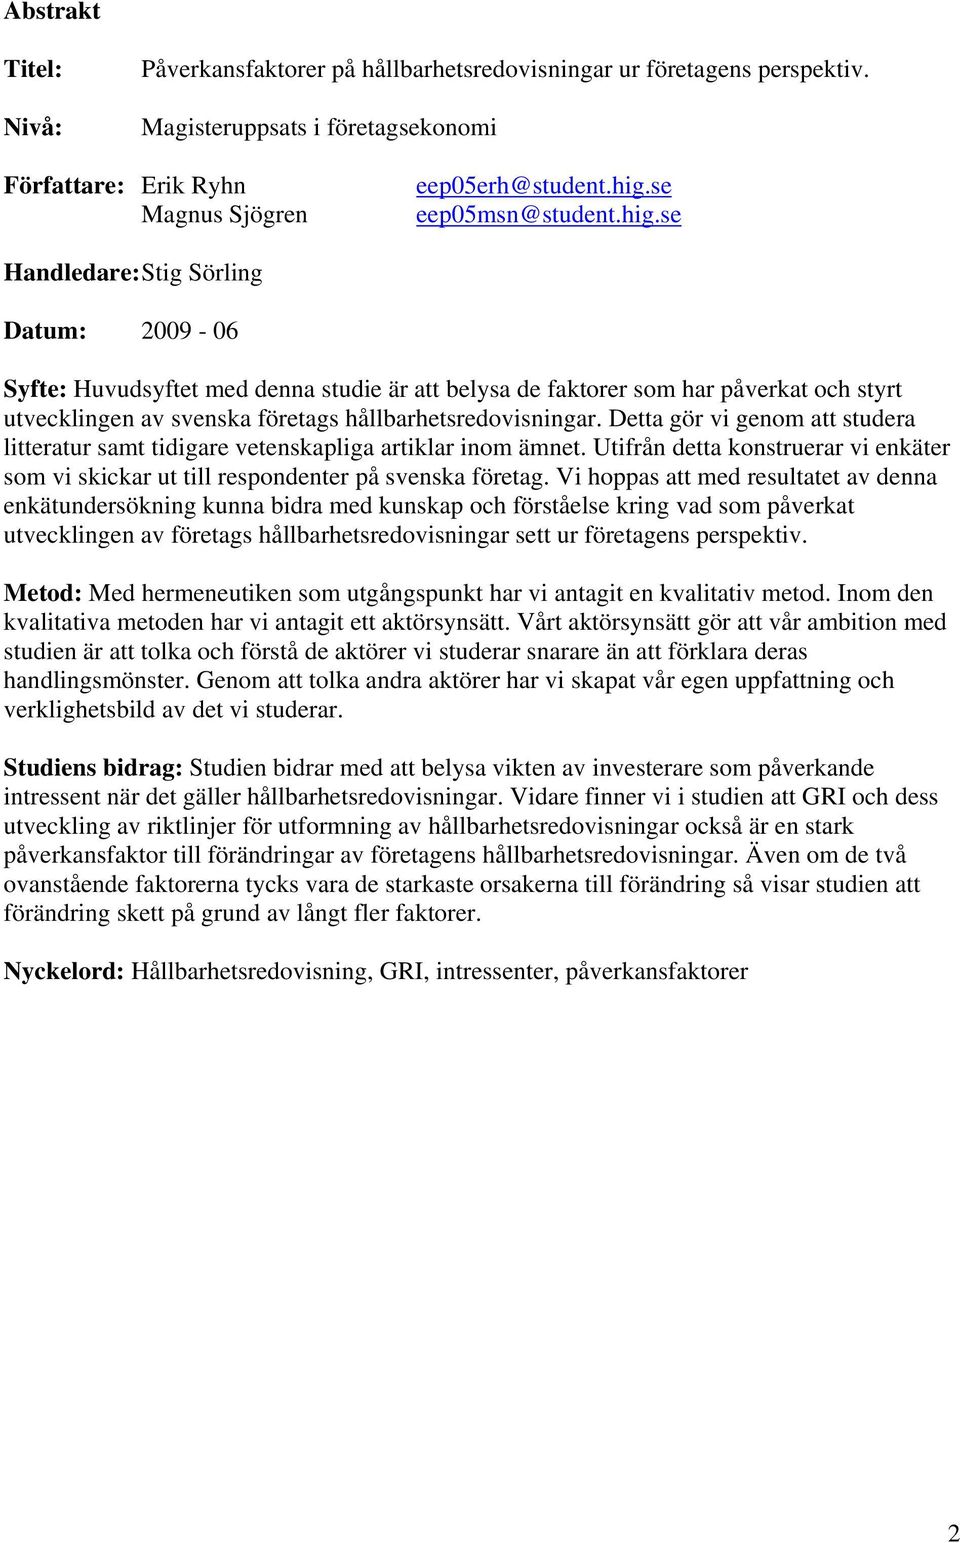 se Handledare: Stig Sörling Datum: 2009-06 Syfte: Huvudsyftet med denna studie är att belysa de faktorer som har påverkat och styrt utvecklingen av svenska företags hållbarhetsredovisningar.